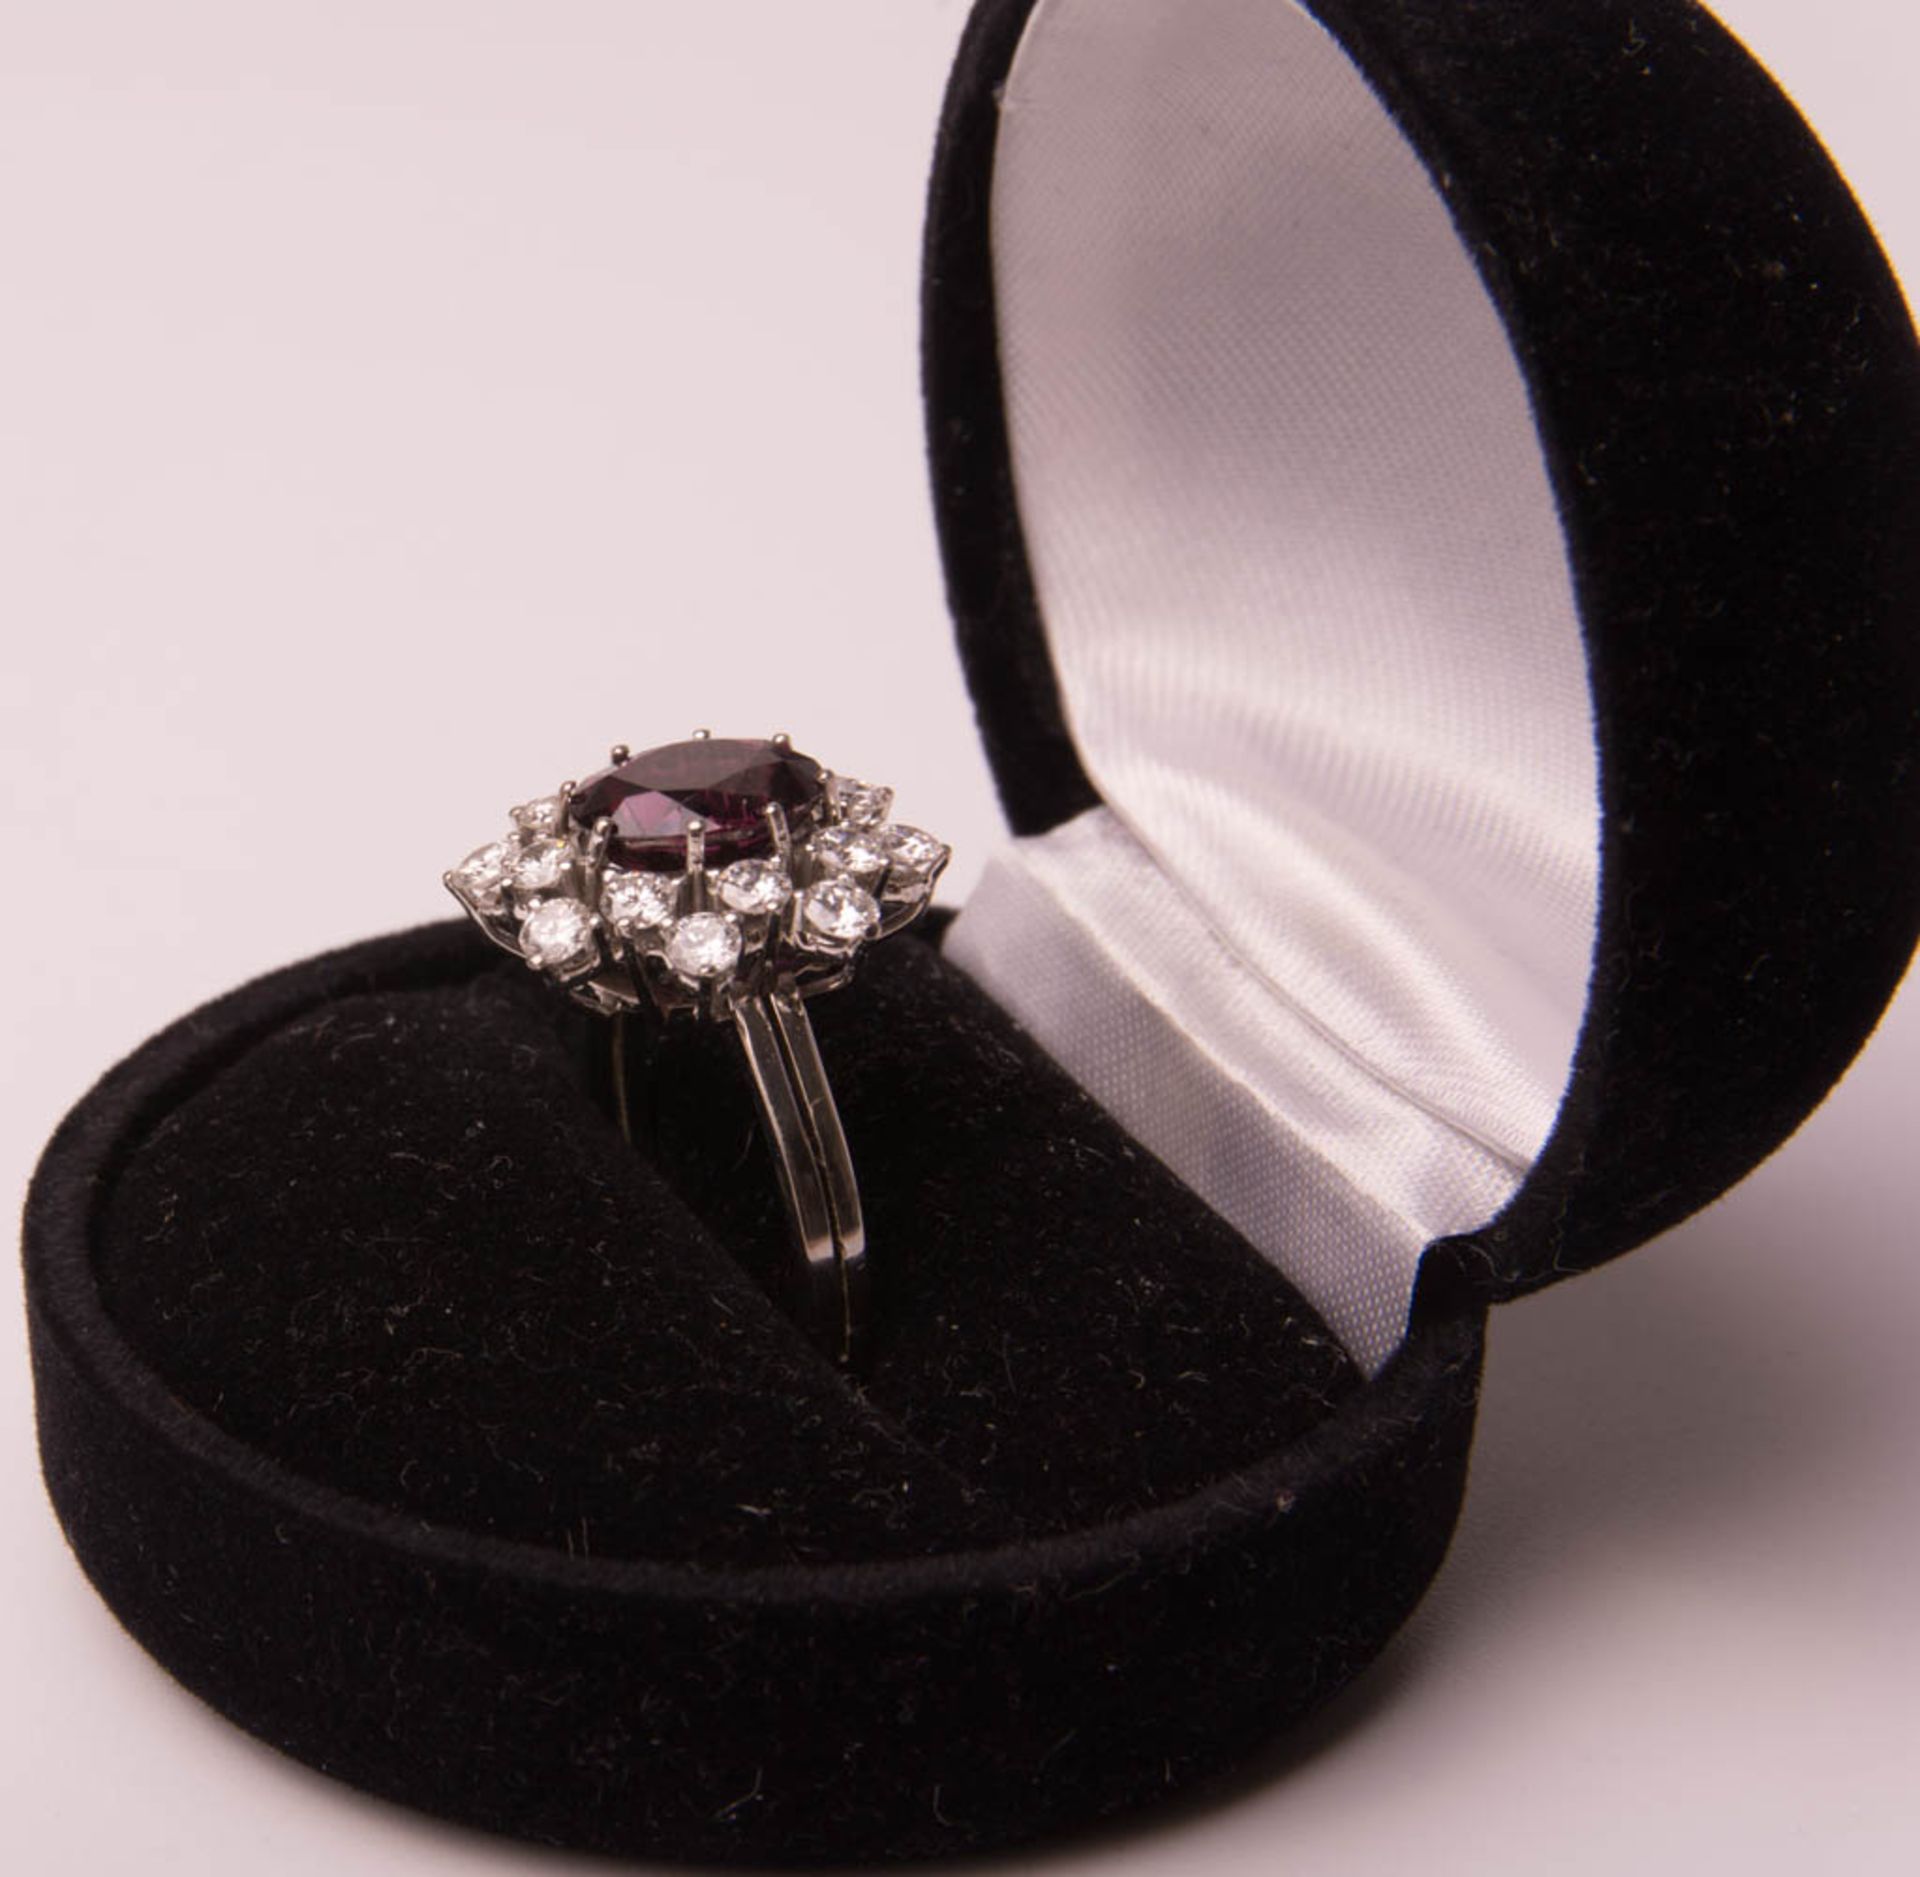 Wunderschöner Ring mit Amethyst und Diamanten, 750er Weißgold. - Bild 2 aus 7